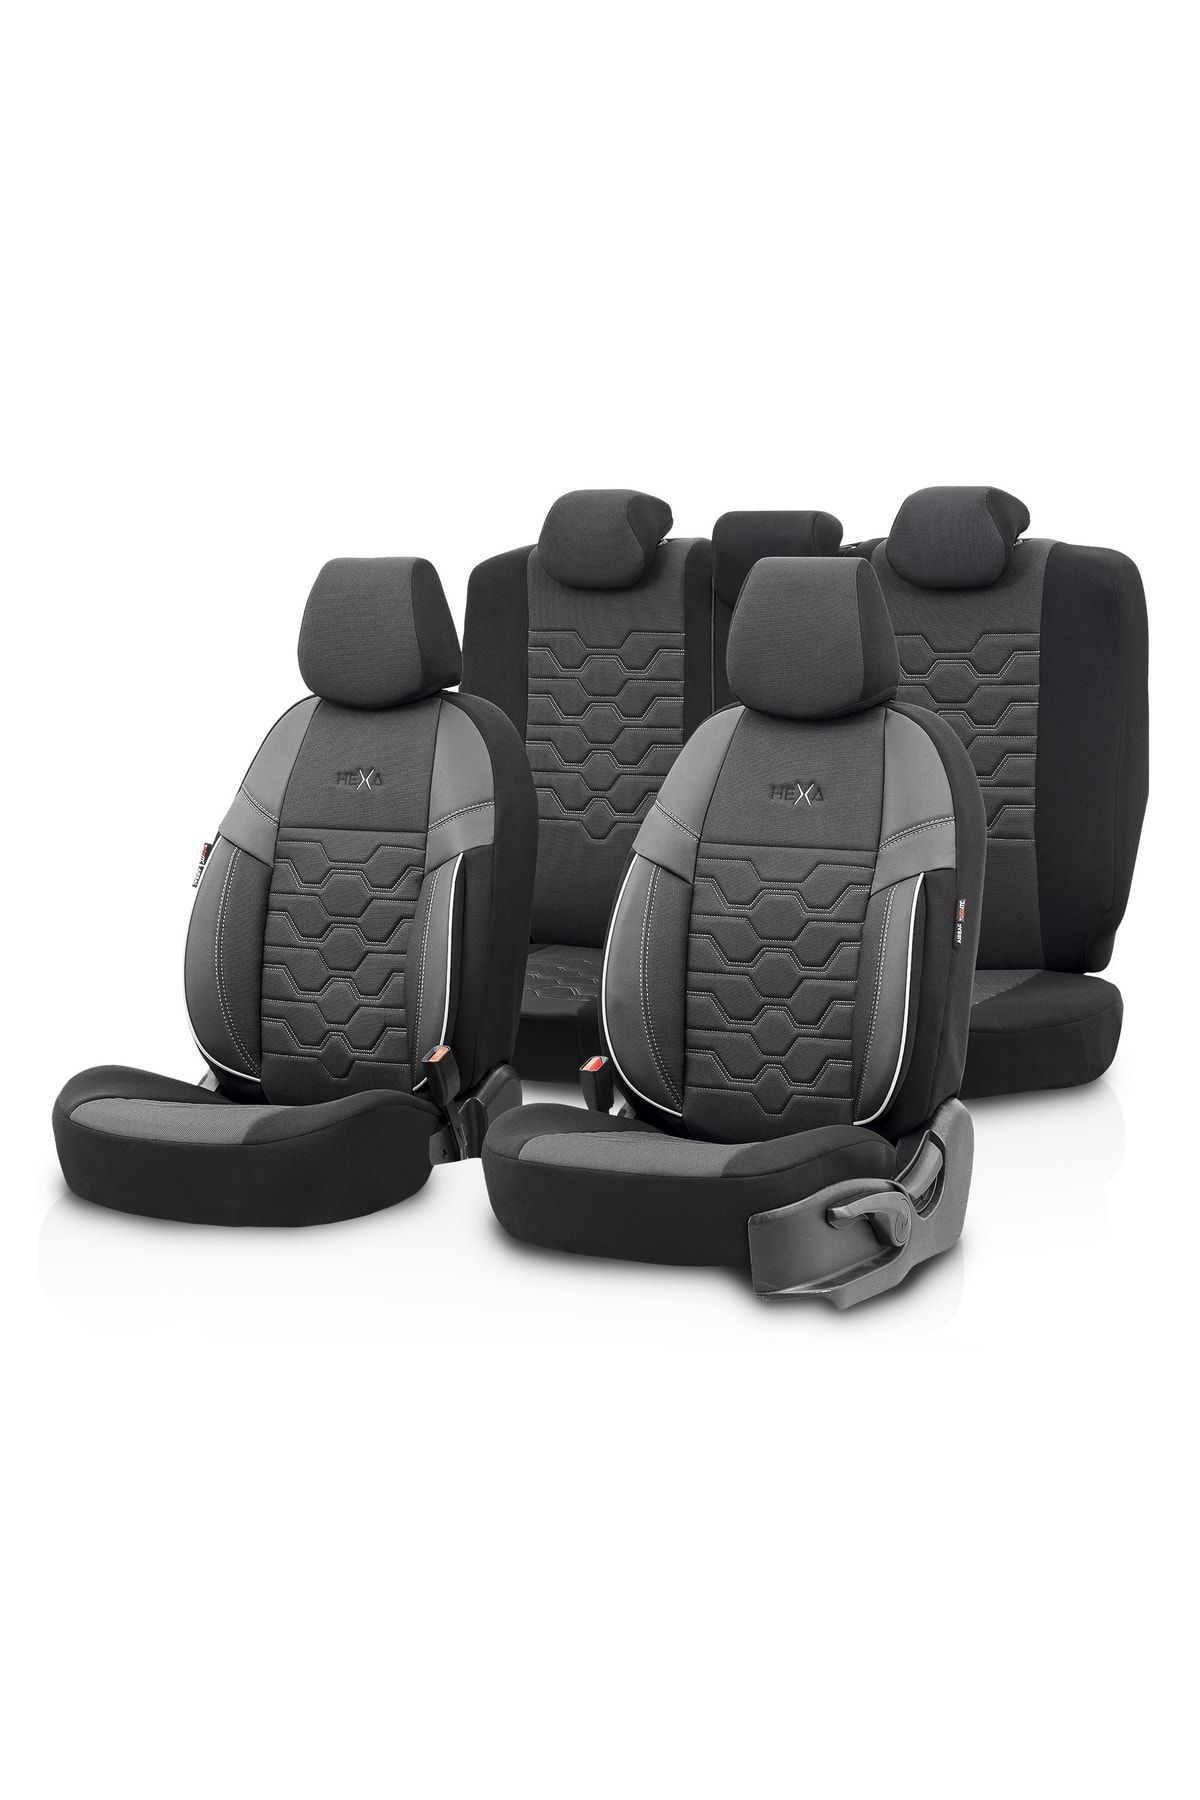 Otom Hexa Design Universal Seat Cover Black-smoked